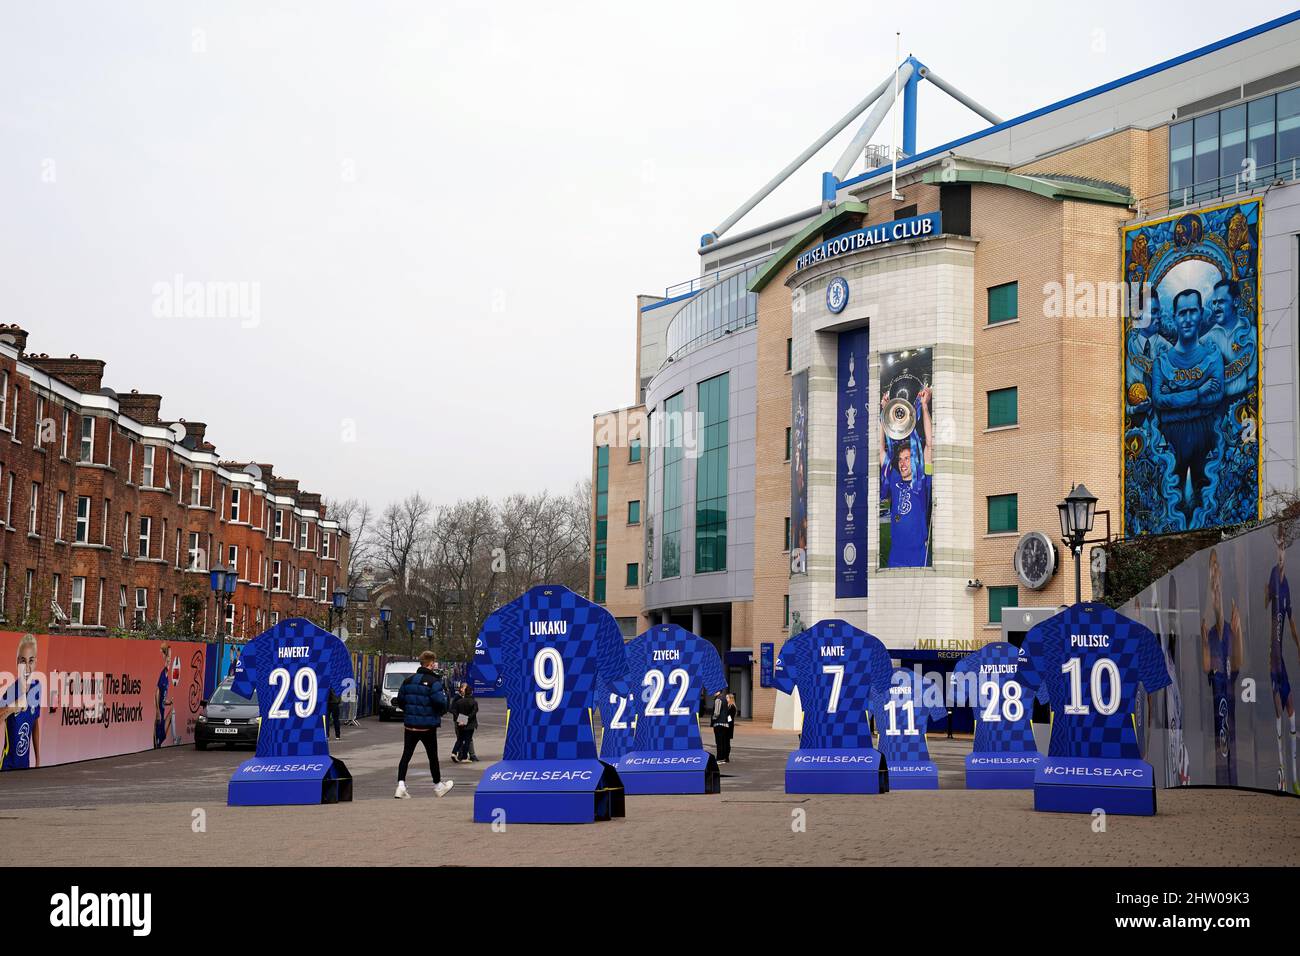 Eine allgemeine Ansicht außerhalb der Stamford Bridge, der Heimat des Chelsea Football Clubs, nachdem der Besitzer Roman Abramovich angekündigt hatte, den Club zu verkaufen. Der russisch-israelische Milliardär ist seit 2003 im Besitz der Blues und hat dazu beigetragen, den Stamford Bridge Club zu 19 großen Trophäen zu führen. Bilddatum: Donnerstag, 3. März 2022. Stockfoto